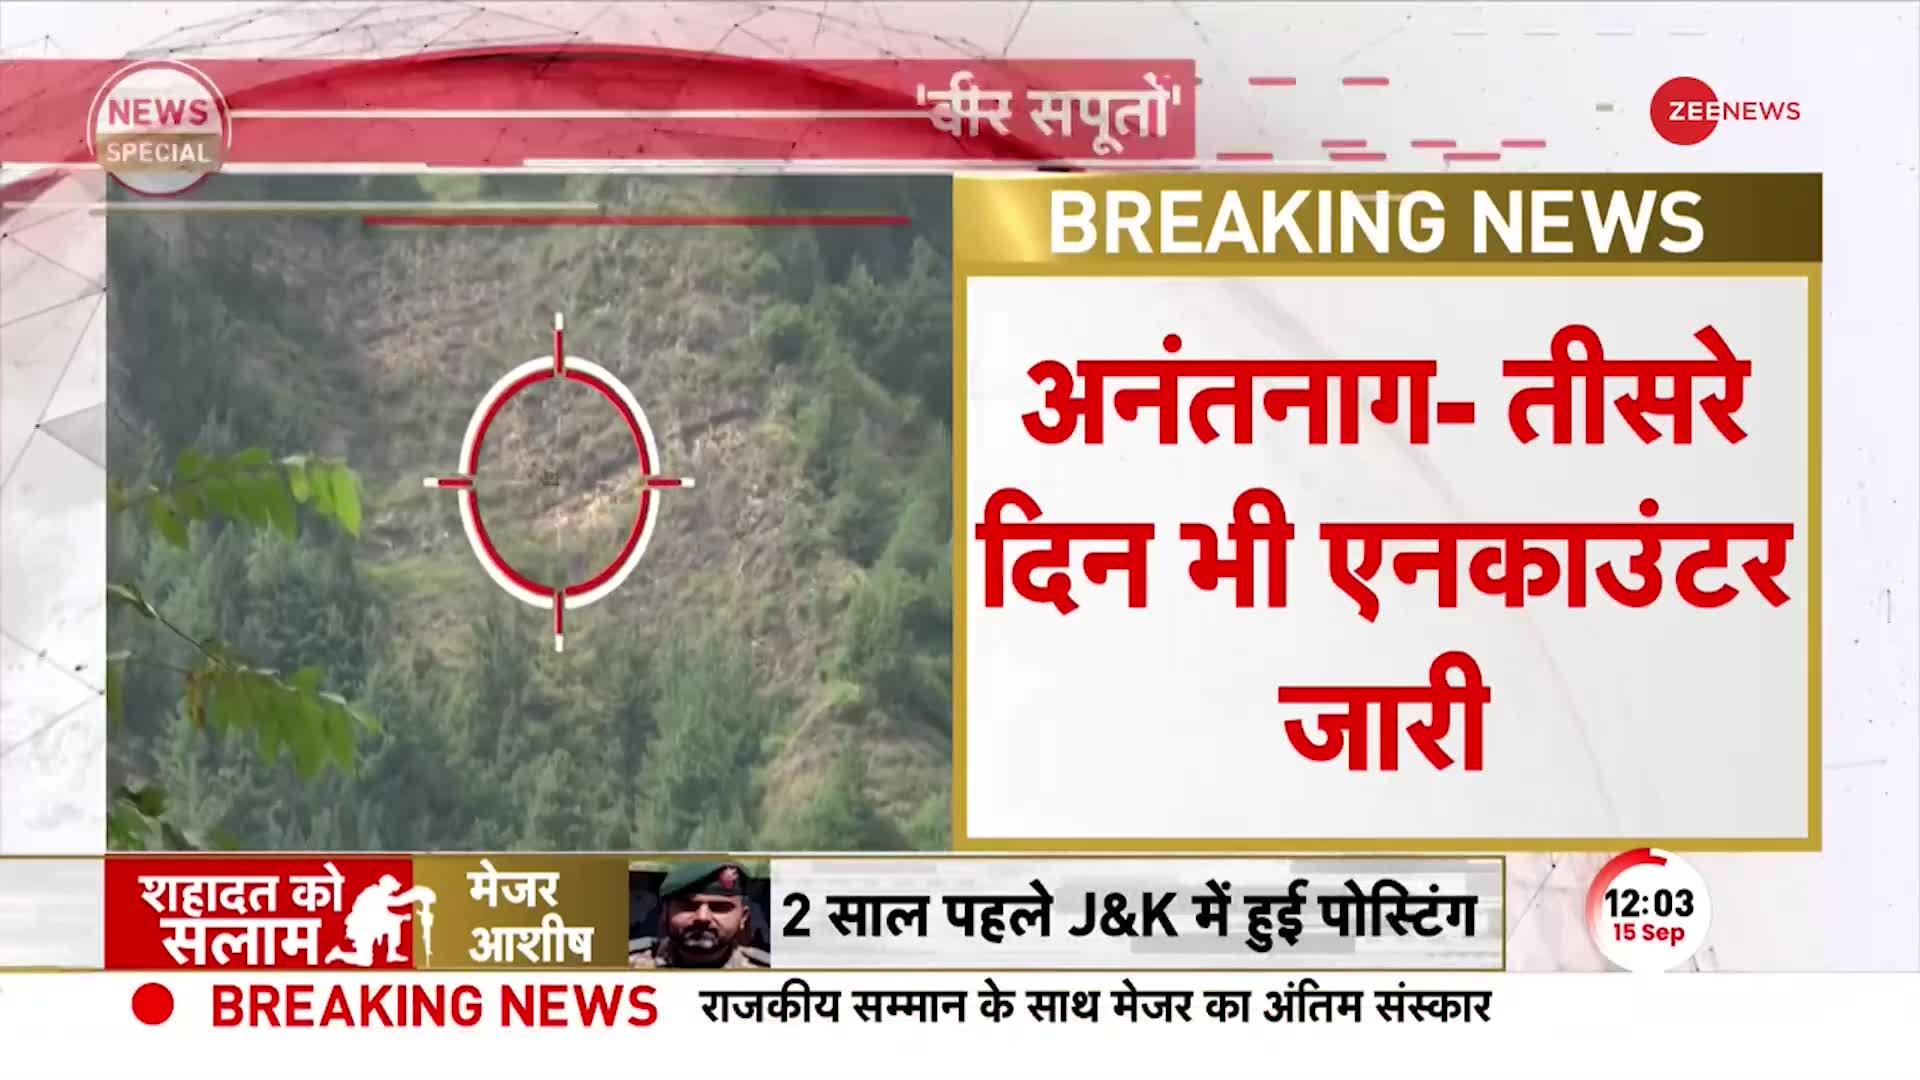 Anantnag Encounter Indian Army Big Operation: आसमान में ड्रोन, ज़मीन पर सेना चारों तरफ से घिरे आतंकी